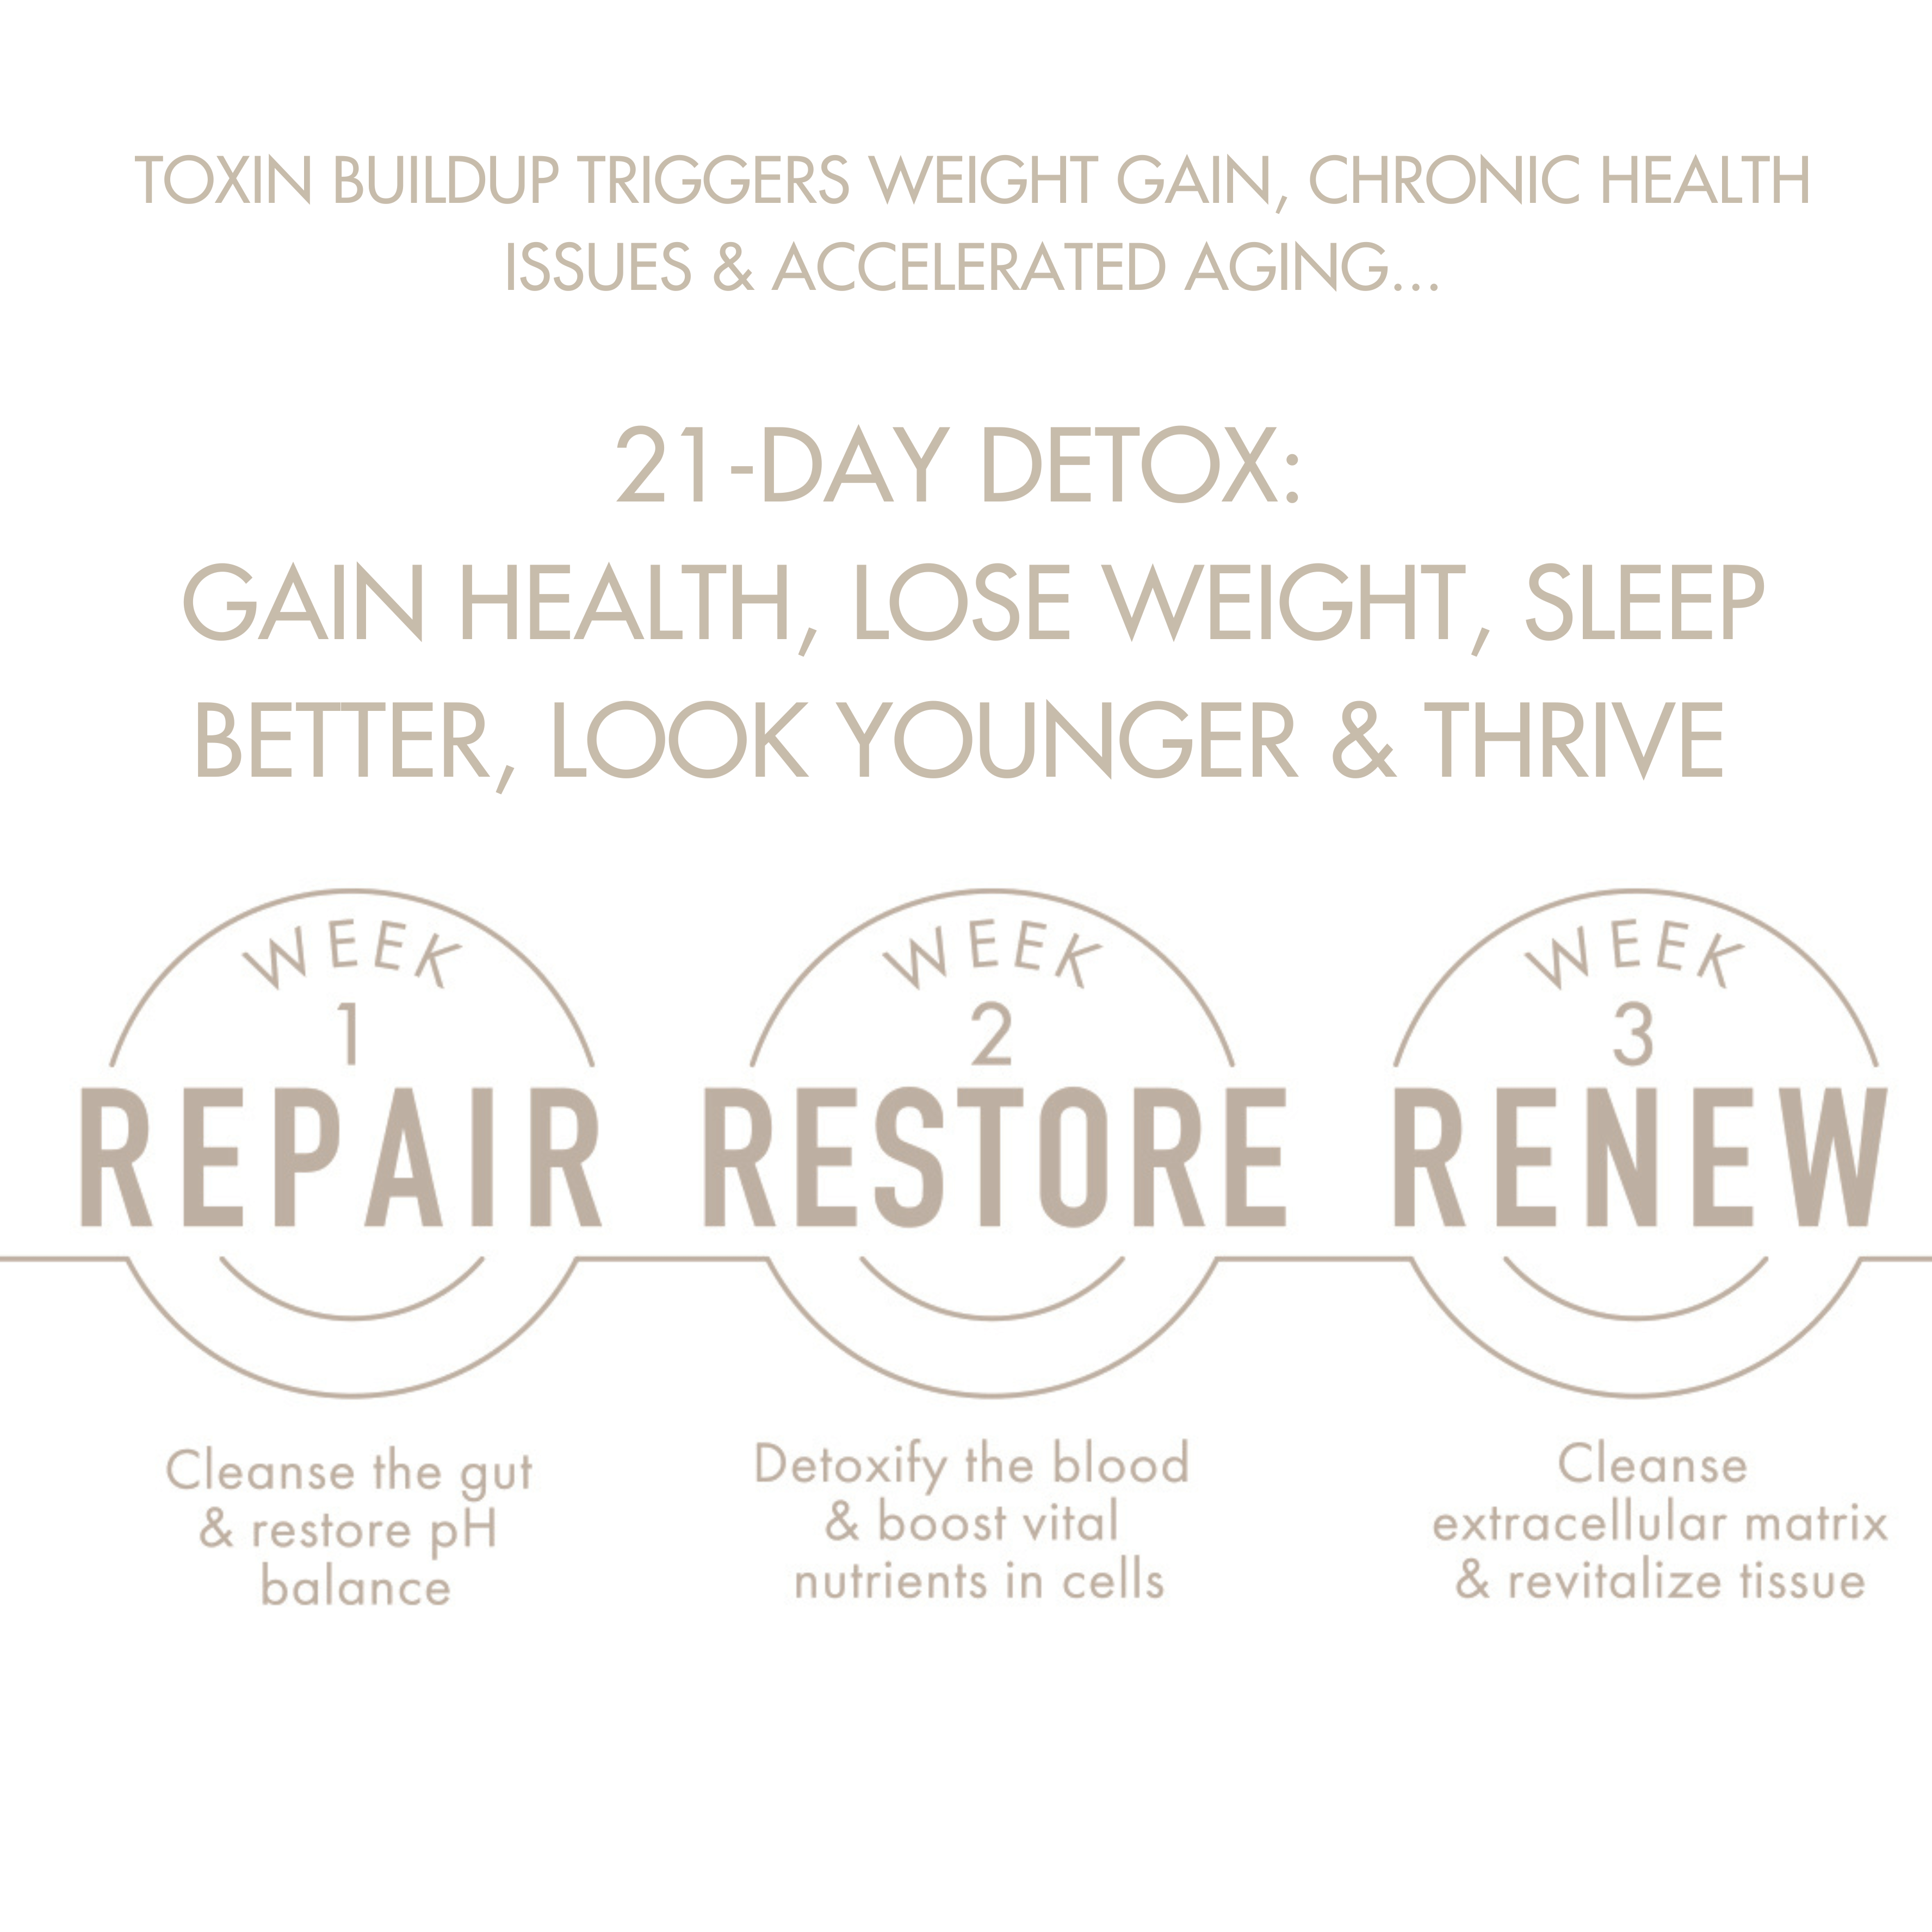 Repair, Restore, Renew 21-day detox process